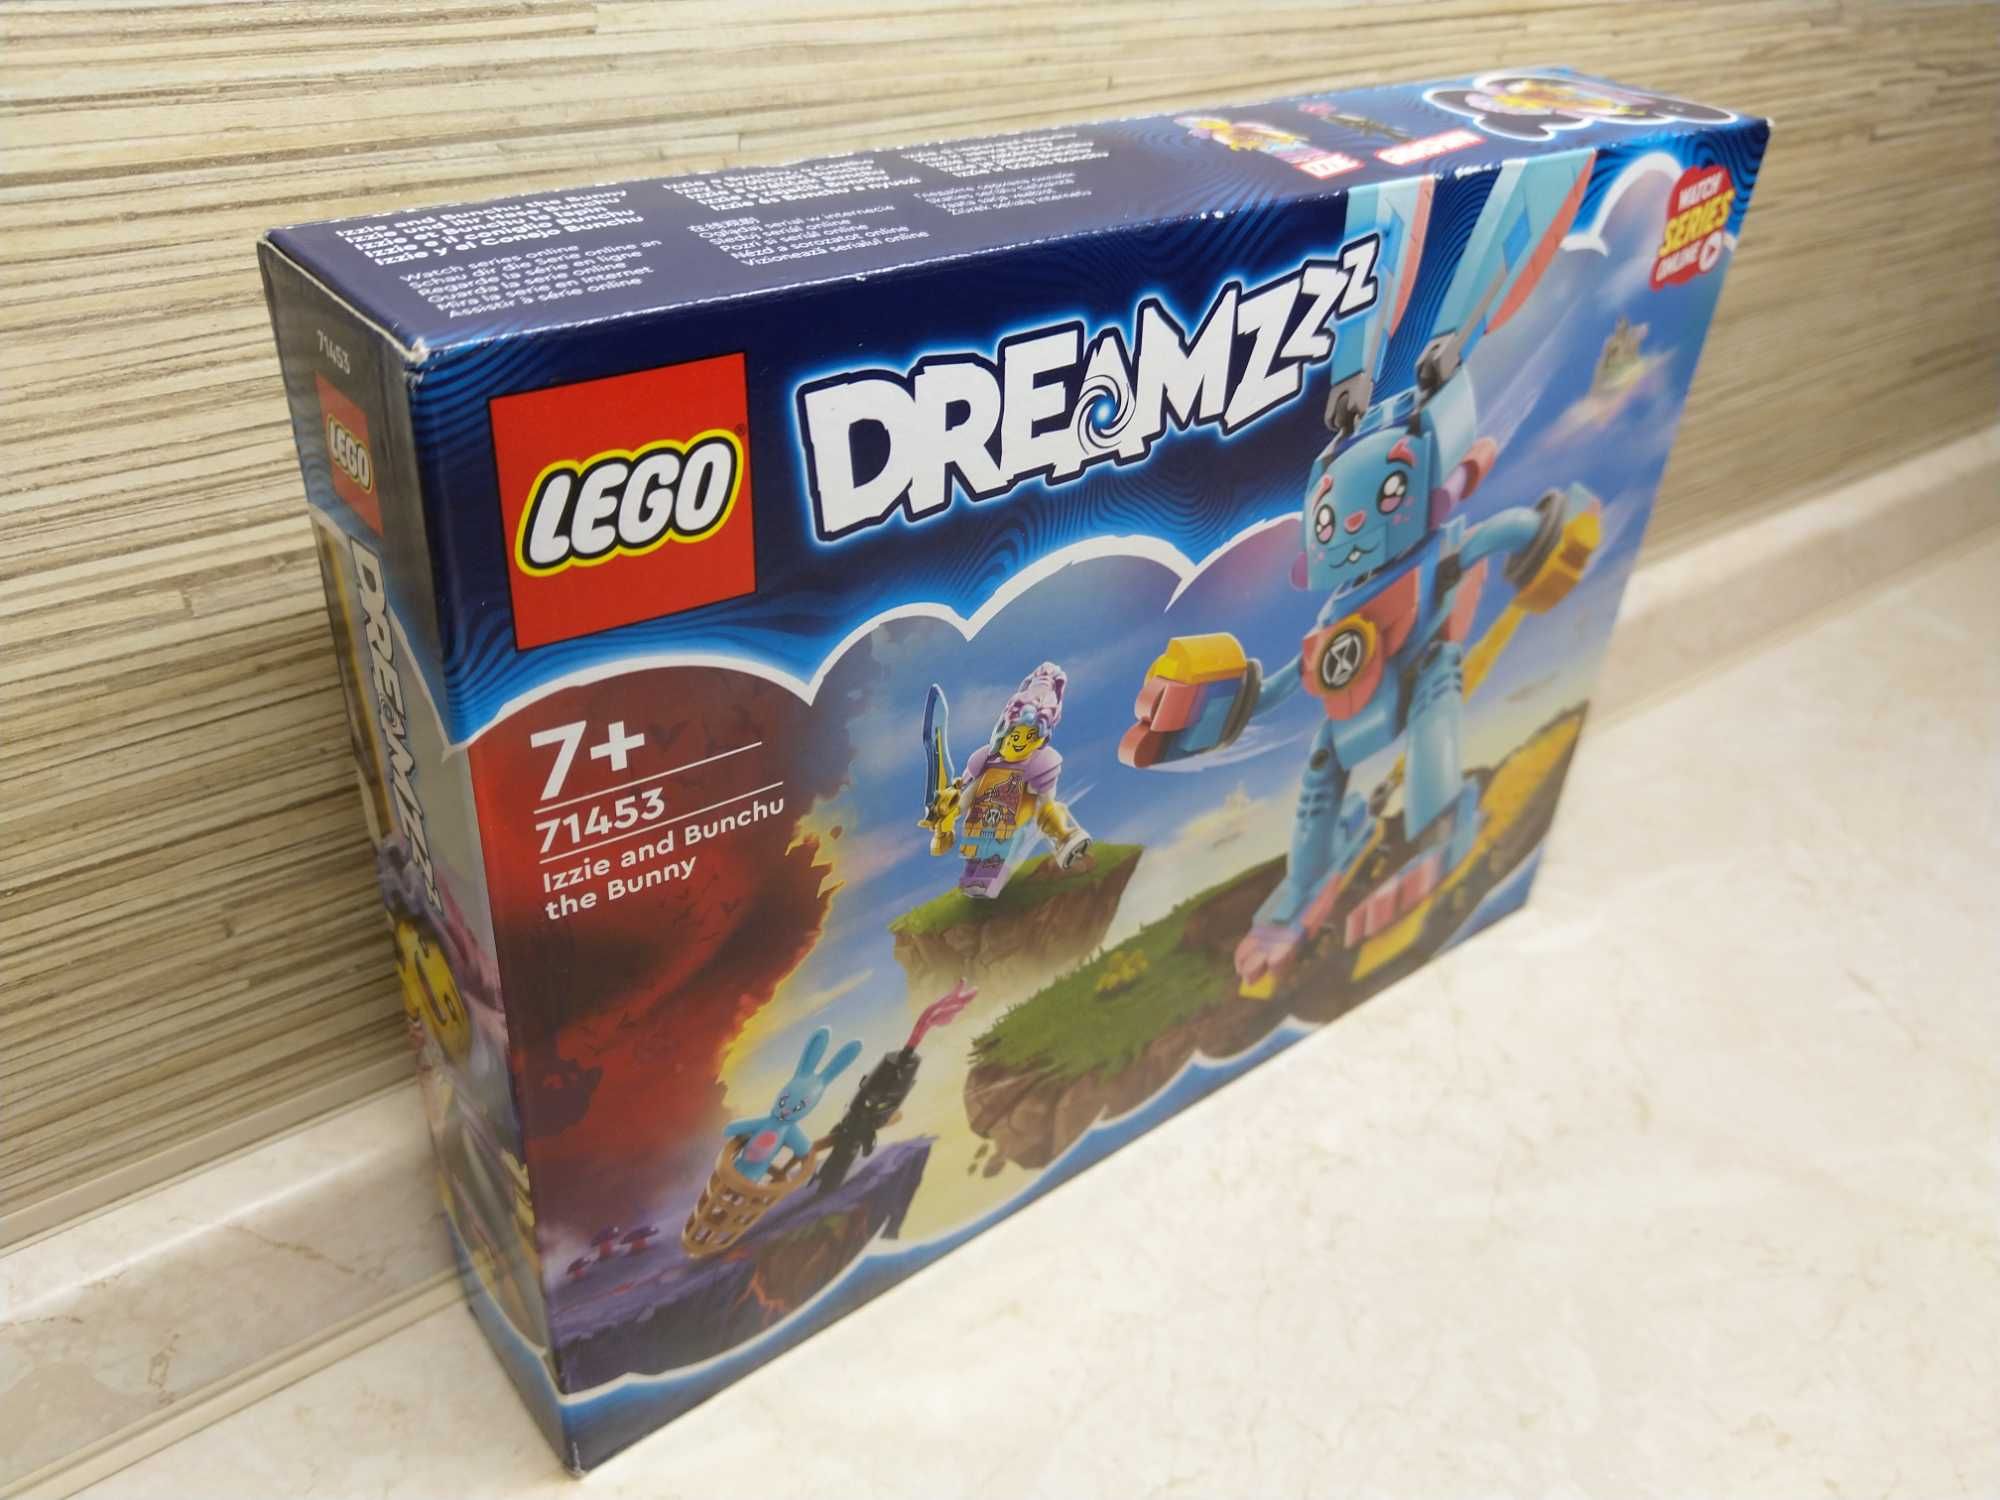 OKAZJA Lego Dreamzzz Izzie i króliczek Bunchu klocki Wysyłam